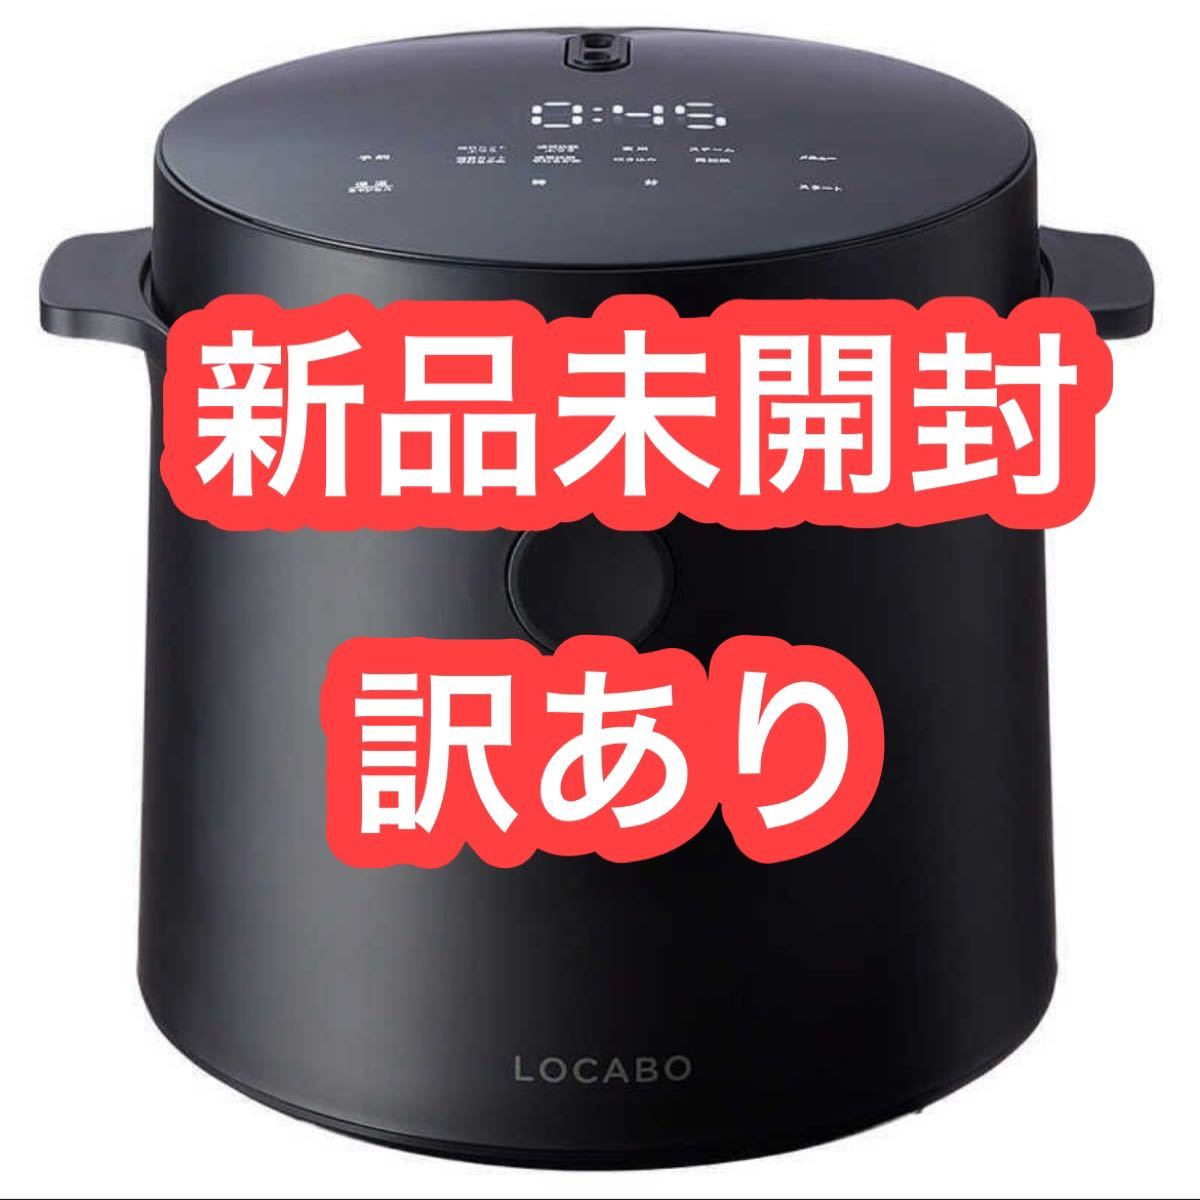 LOCABO 糖質カット炊飯器 ロカボ JM-C20E-B 新品